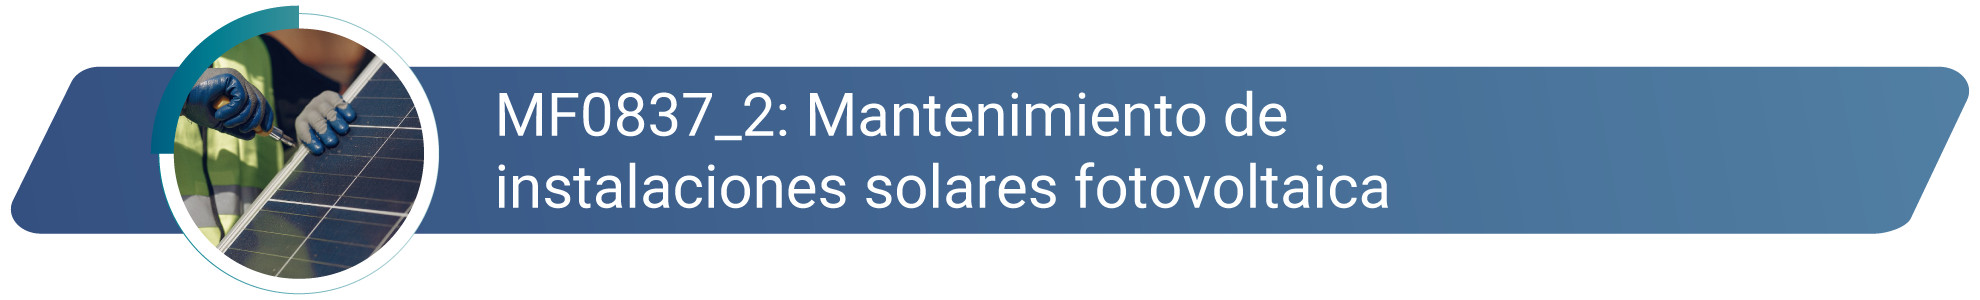 MF0837_2 - Mantenimiento de instalaciones solares fotovoltaicas